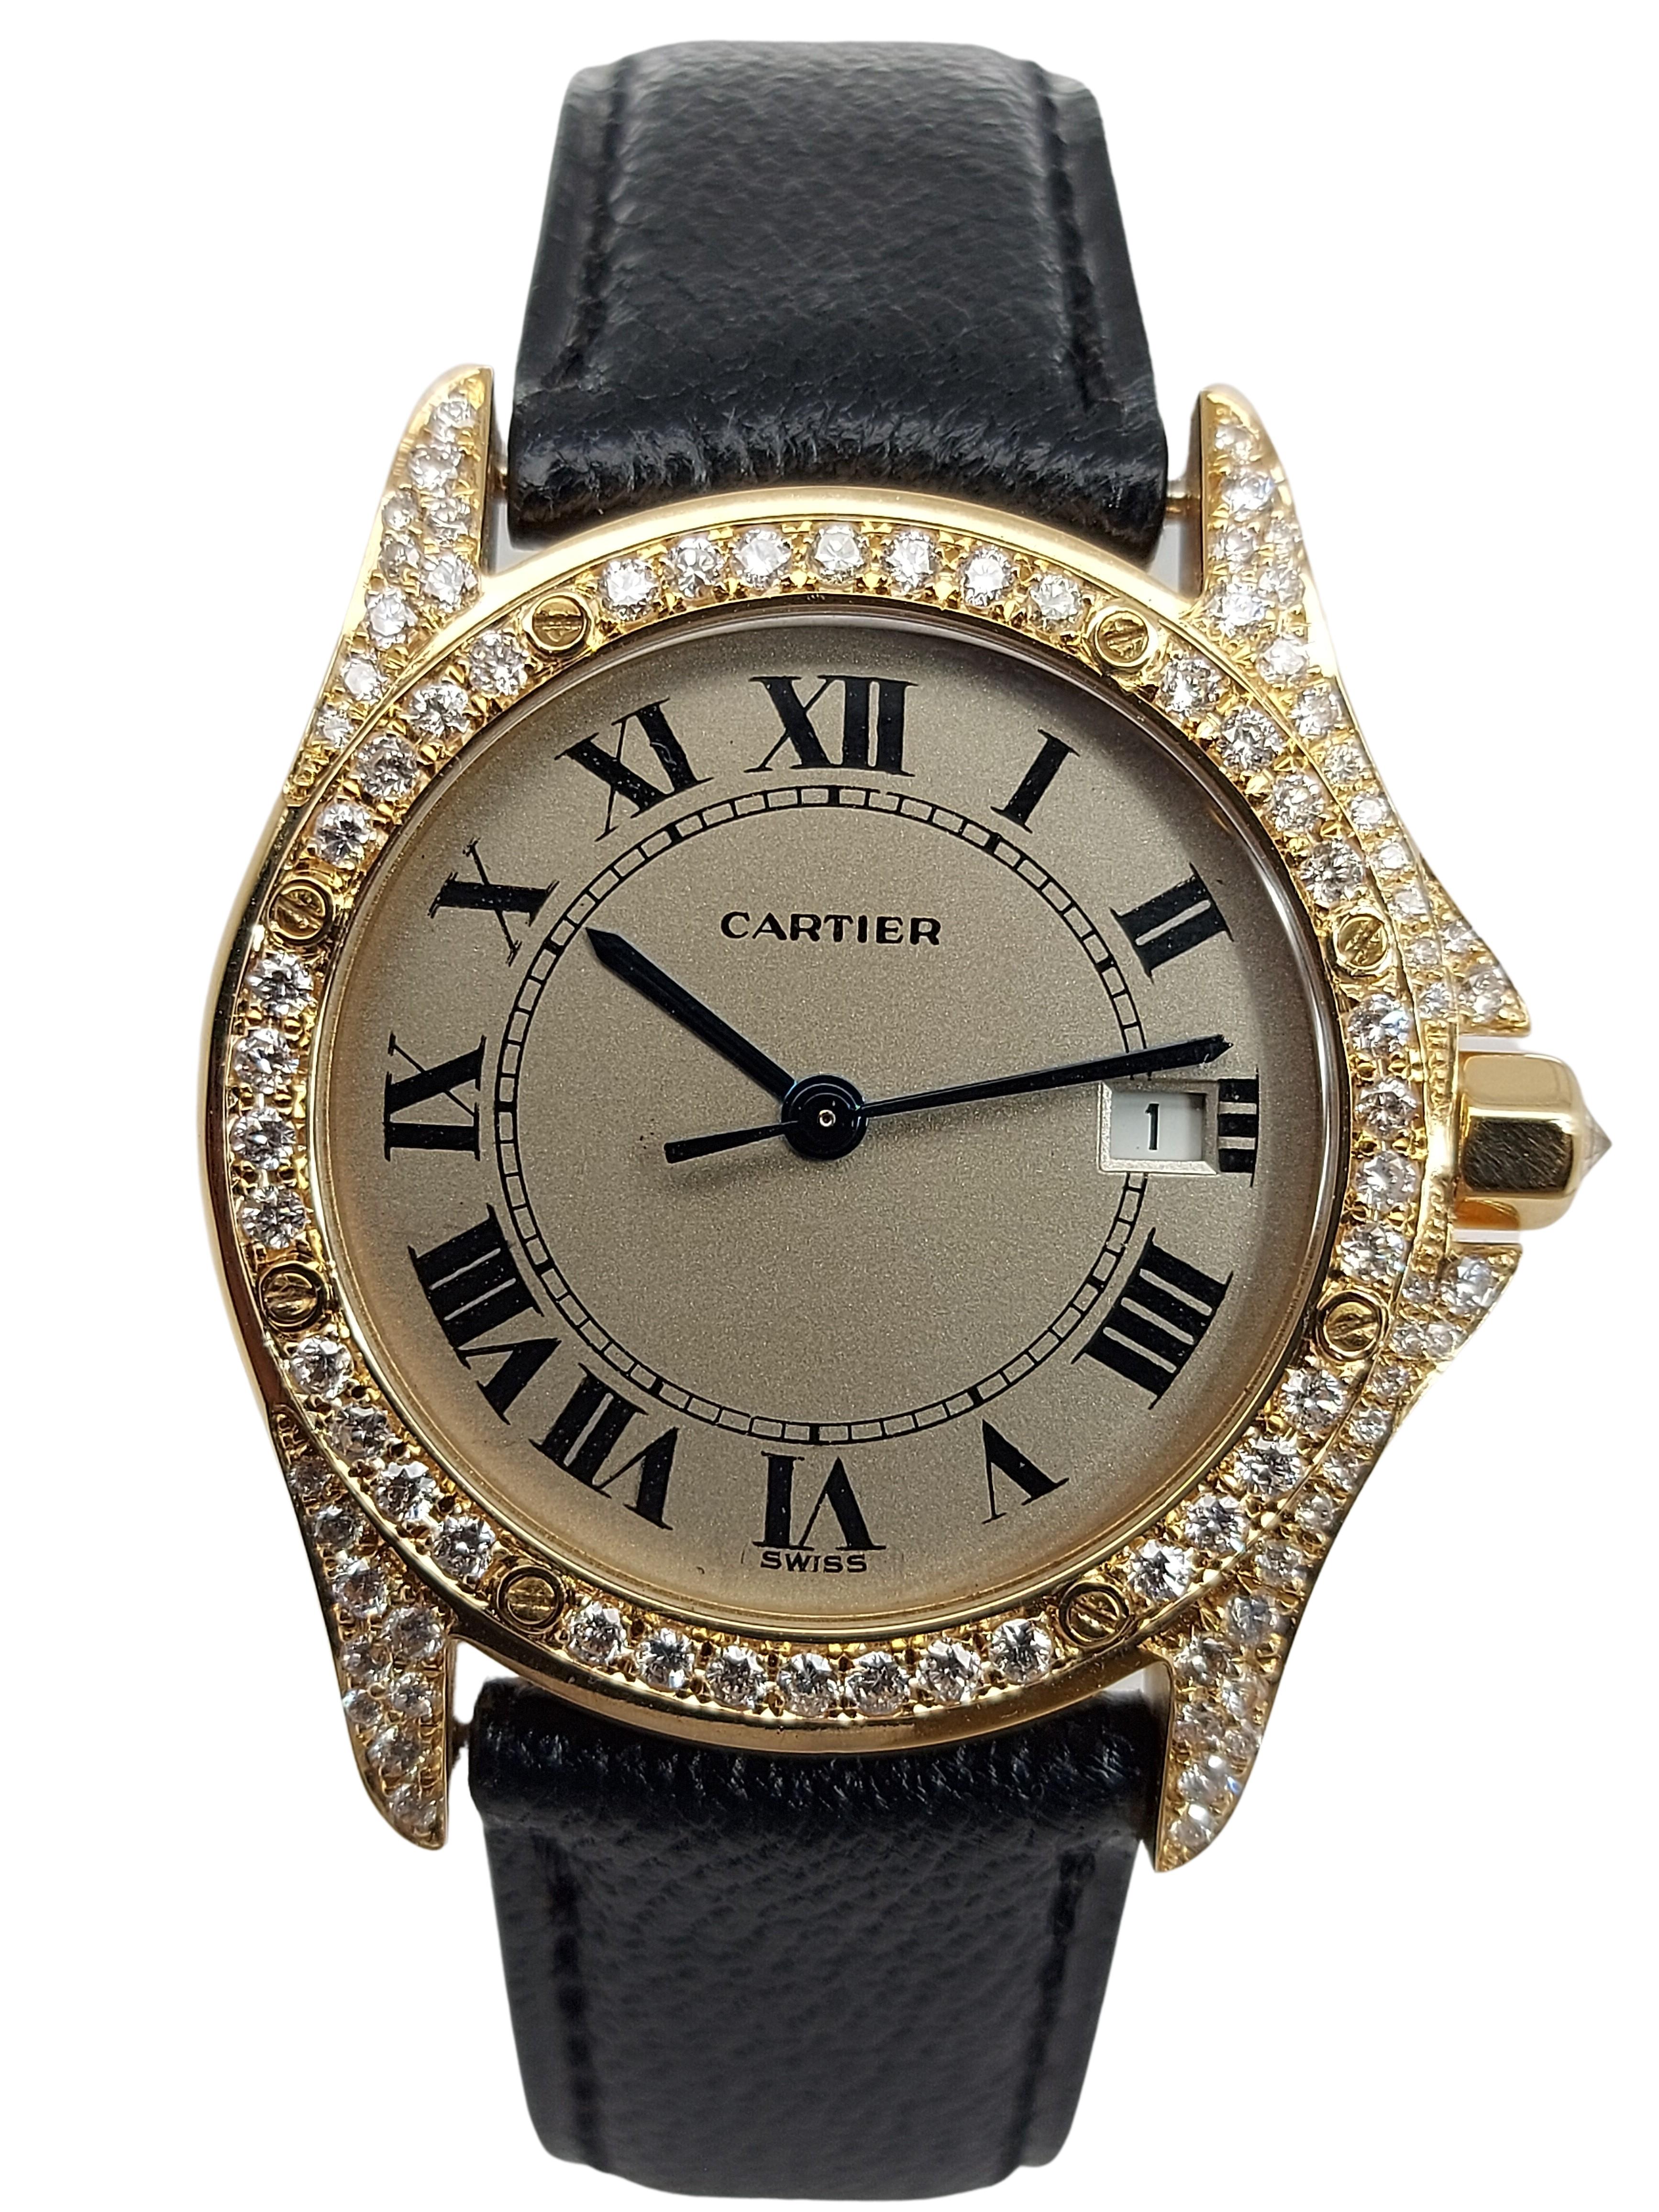 Artisan Cartier Cougar Wristwatch, 18 Karat Yellow Gold, Diamond Bezel, Quartz